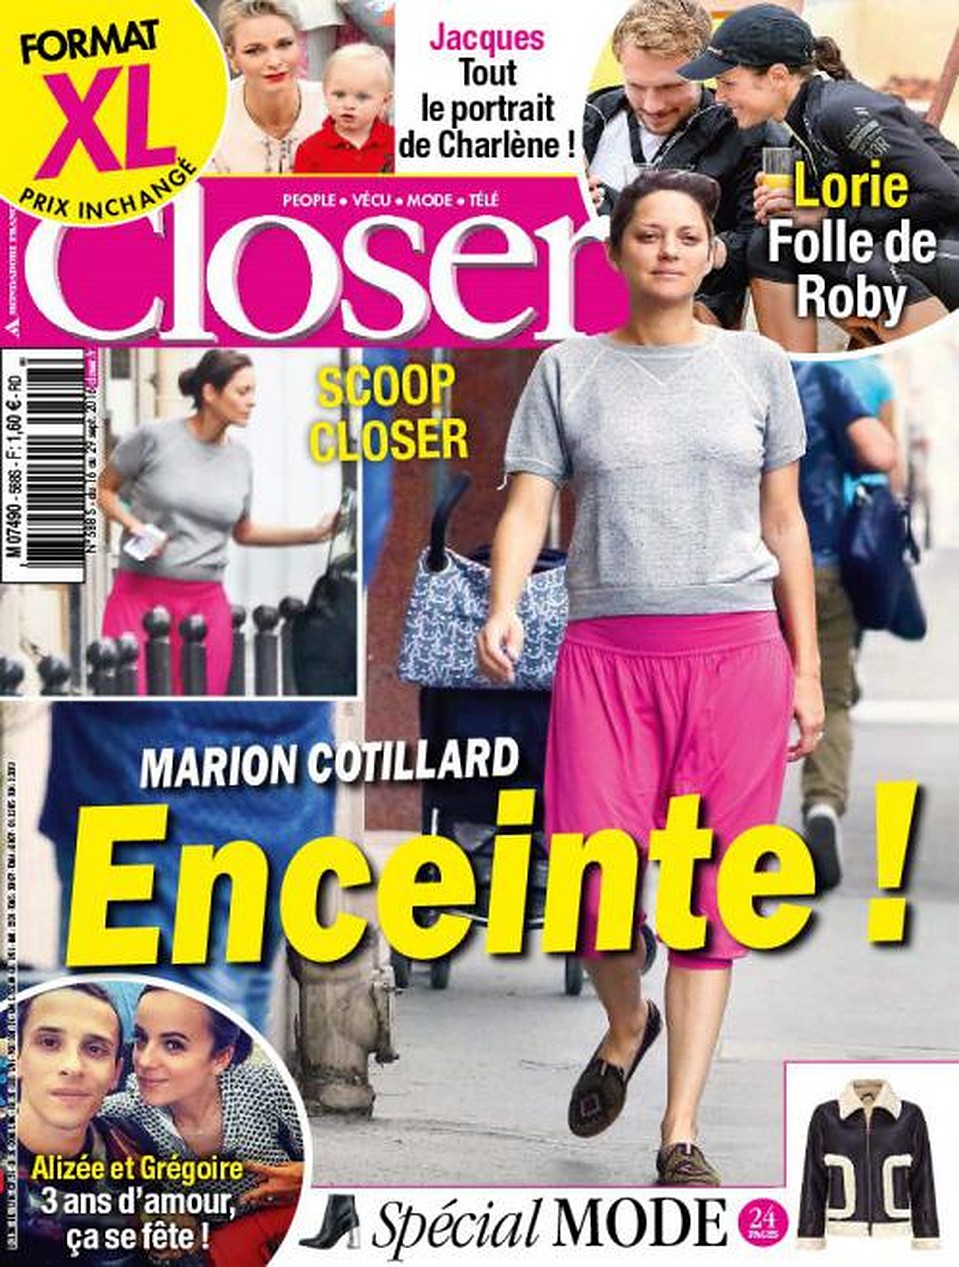 Об интересном положении Котийяр сообщил французский журнал Closer: издание поместило снимок беременной актрисы на обложку. 